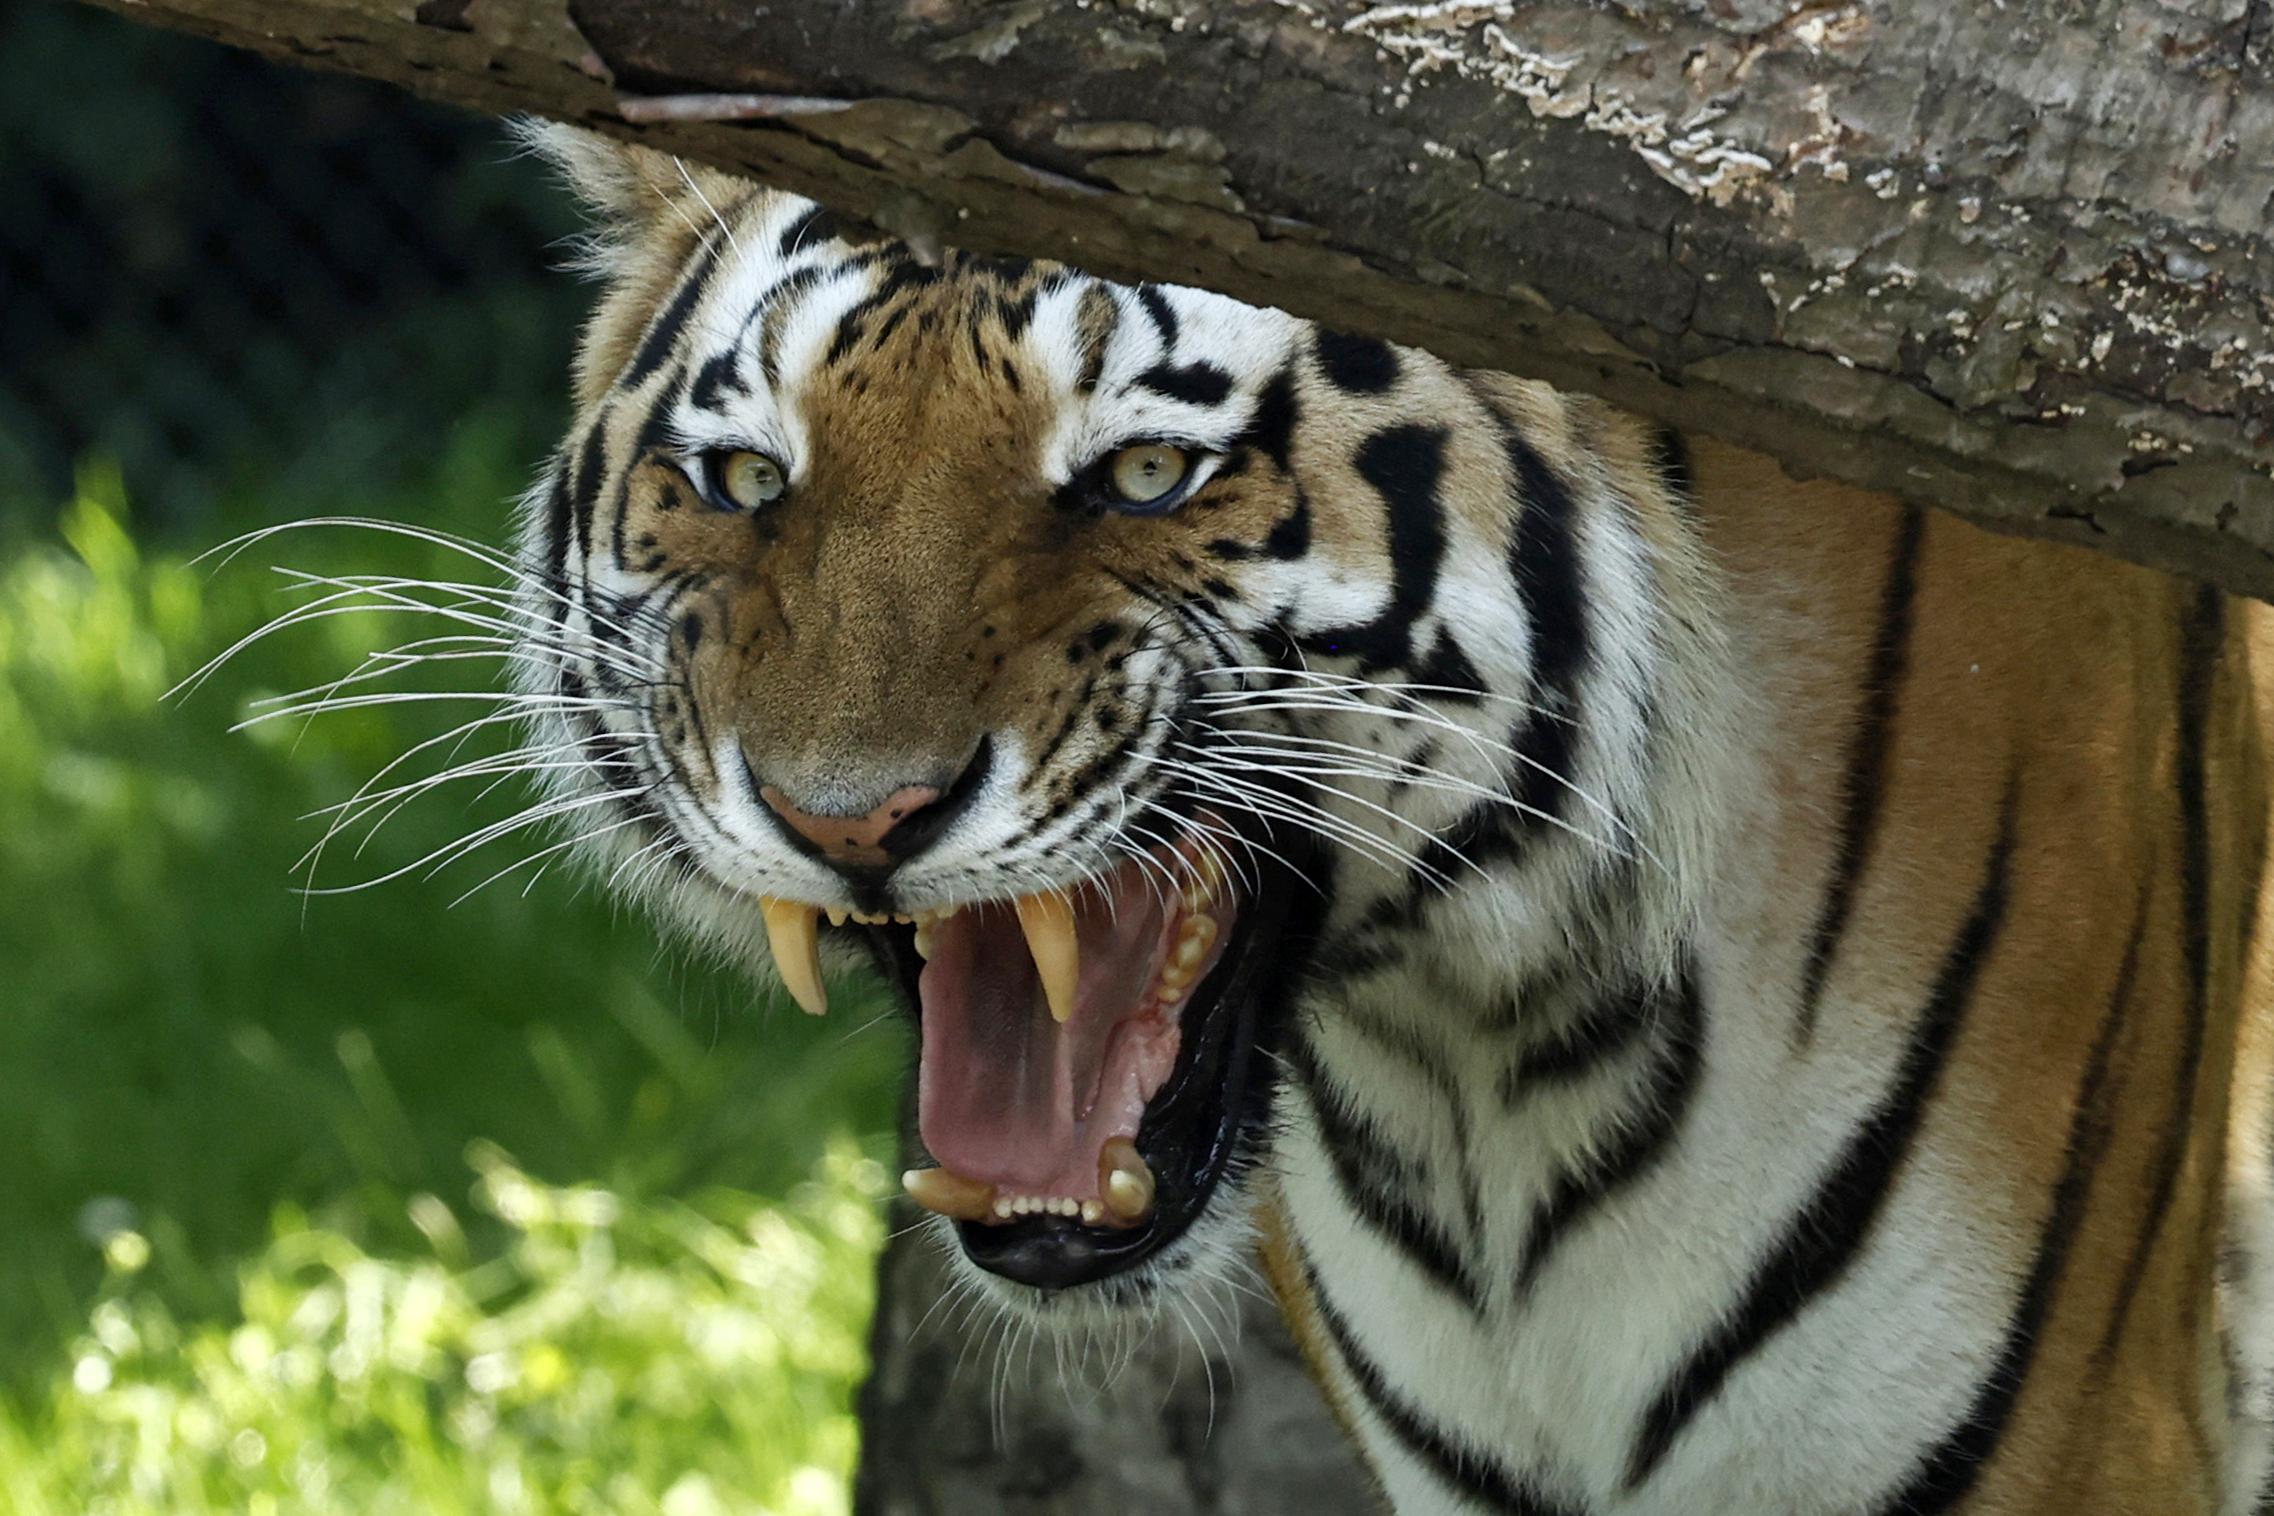 A Sibirian Tiger hisses in its enclosure.